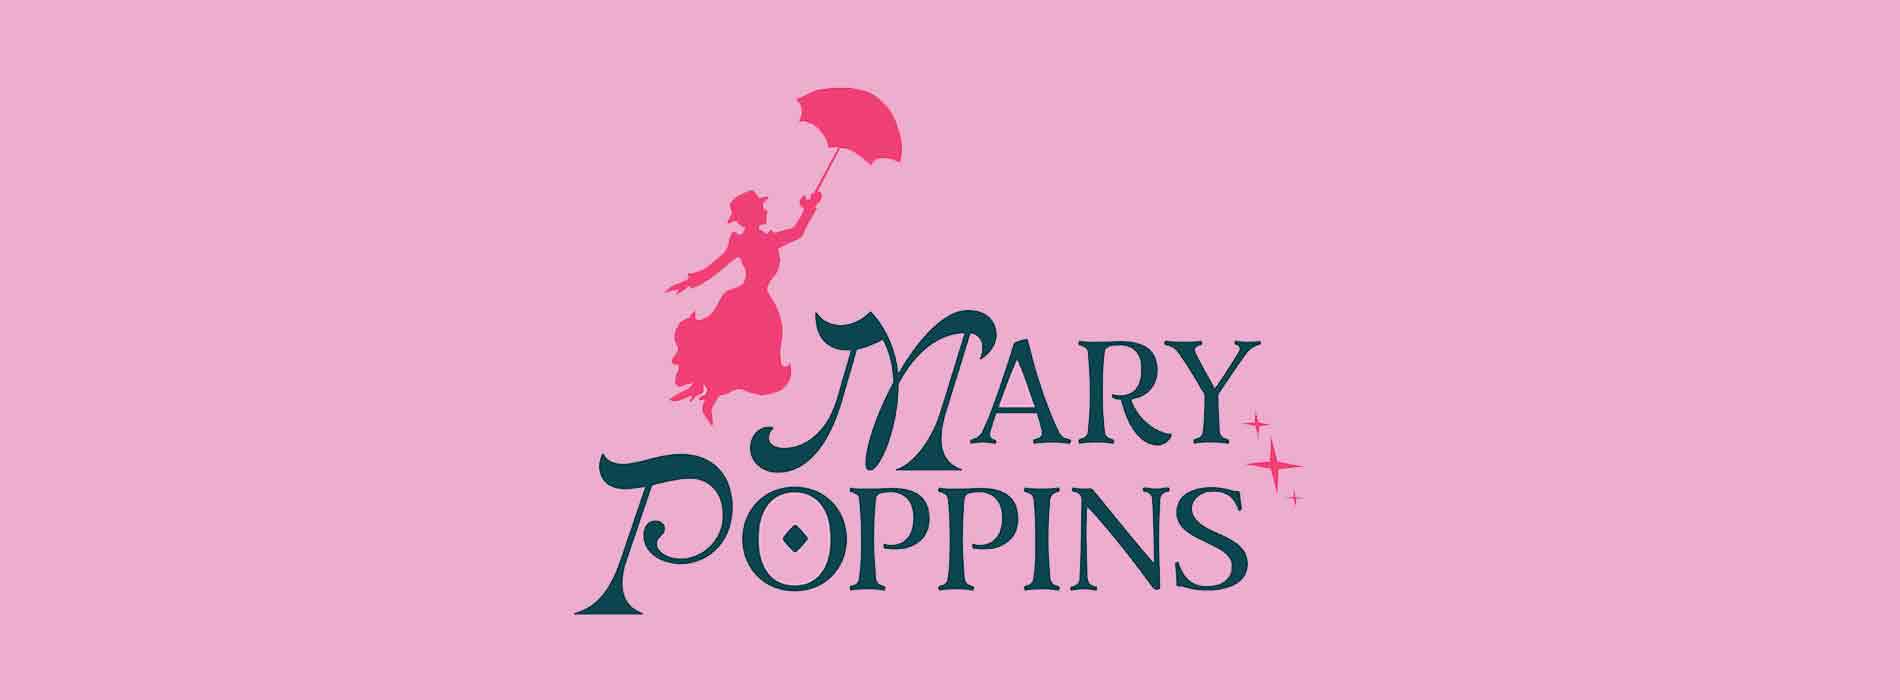 NEXT UP: MARY POPPINS